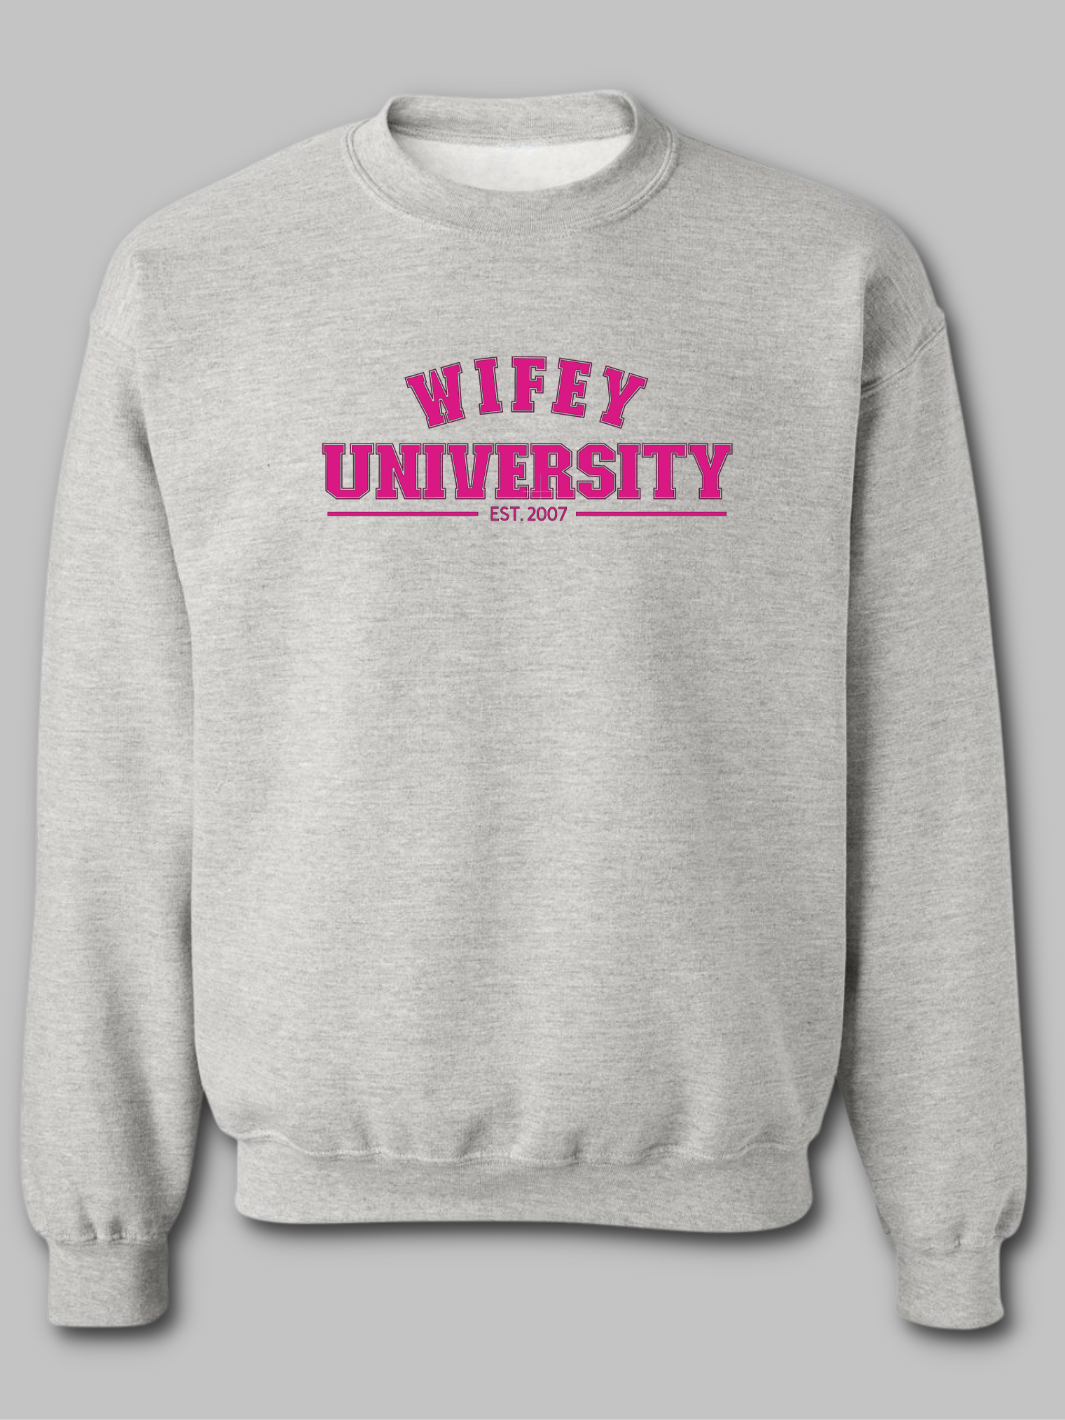 Wifey University